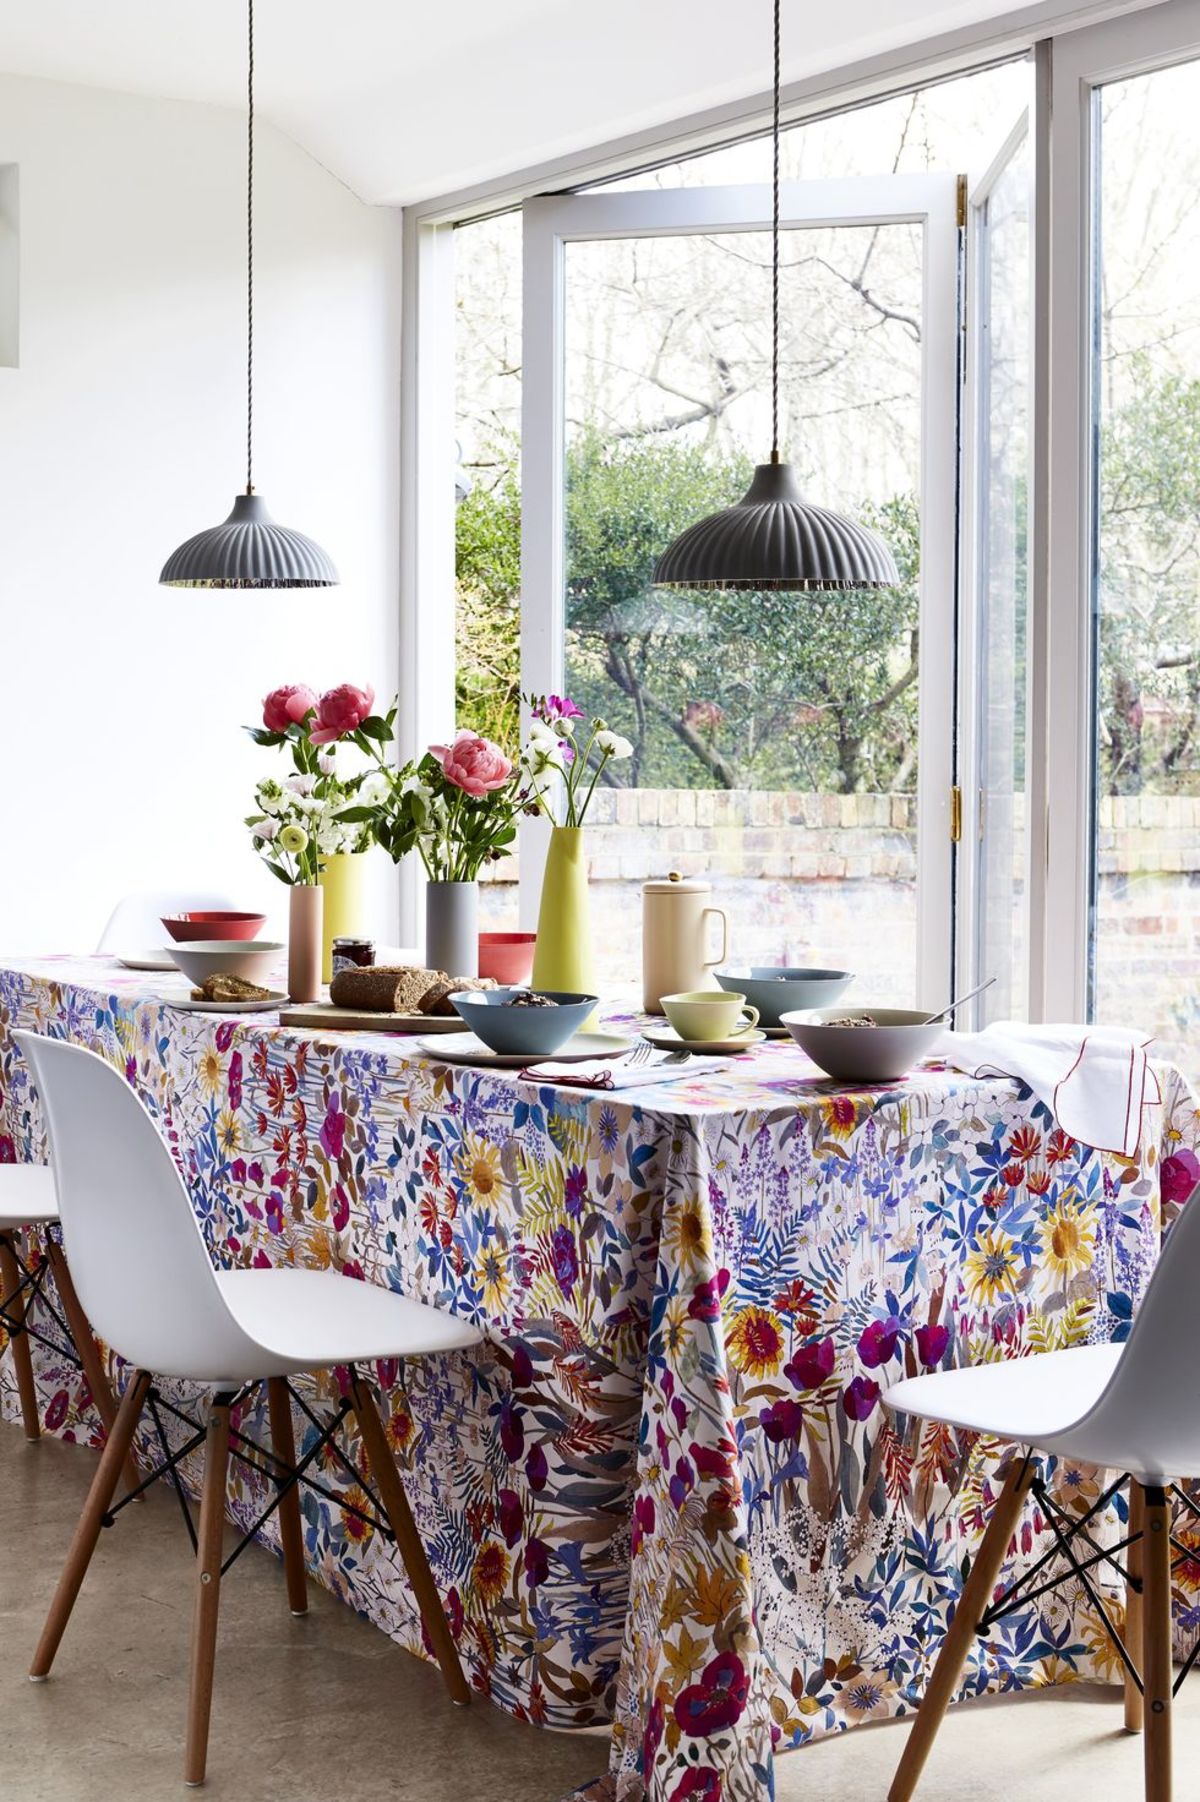 Hãy biến bàn ăn thành một tác phẩm nghệ thuật với tấm khăn đủ sắc màu, hoa văn hay họa tiết mà bạn yêu thích. 